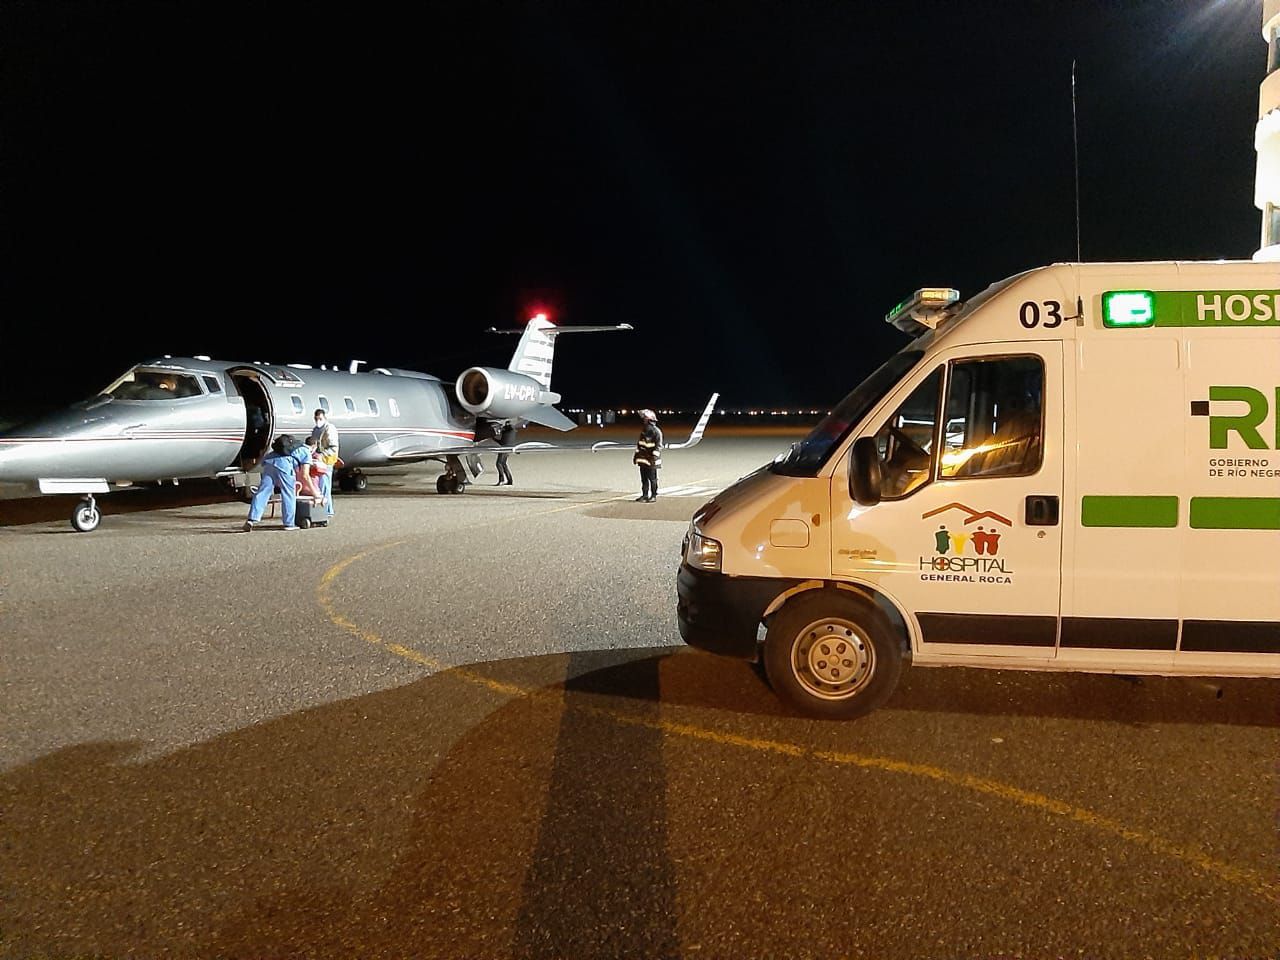 El aeropuerto de Roca operó de noche con un nuevo vuelo sanitario.
